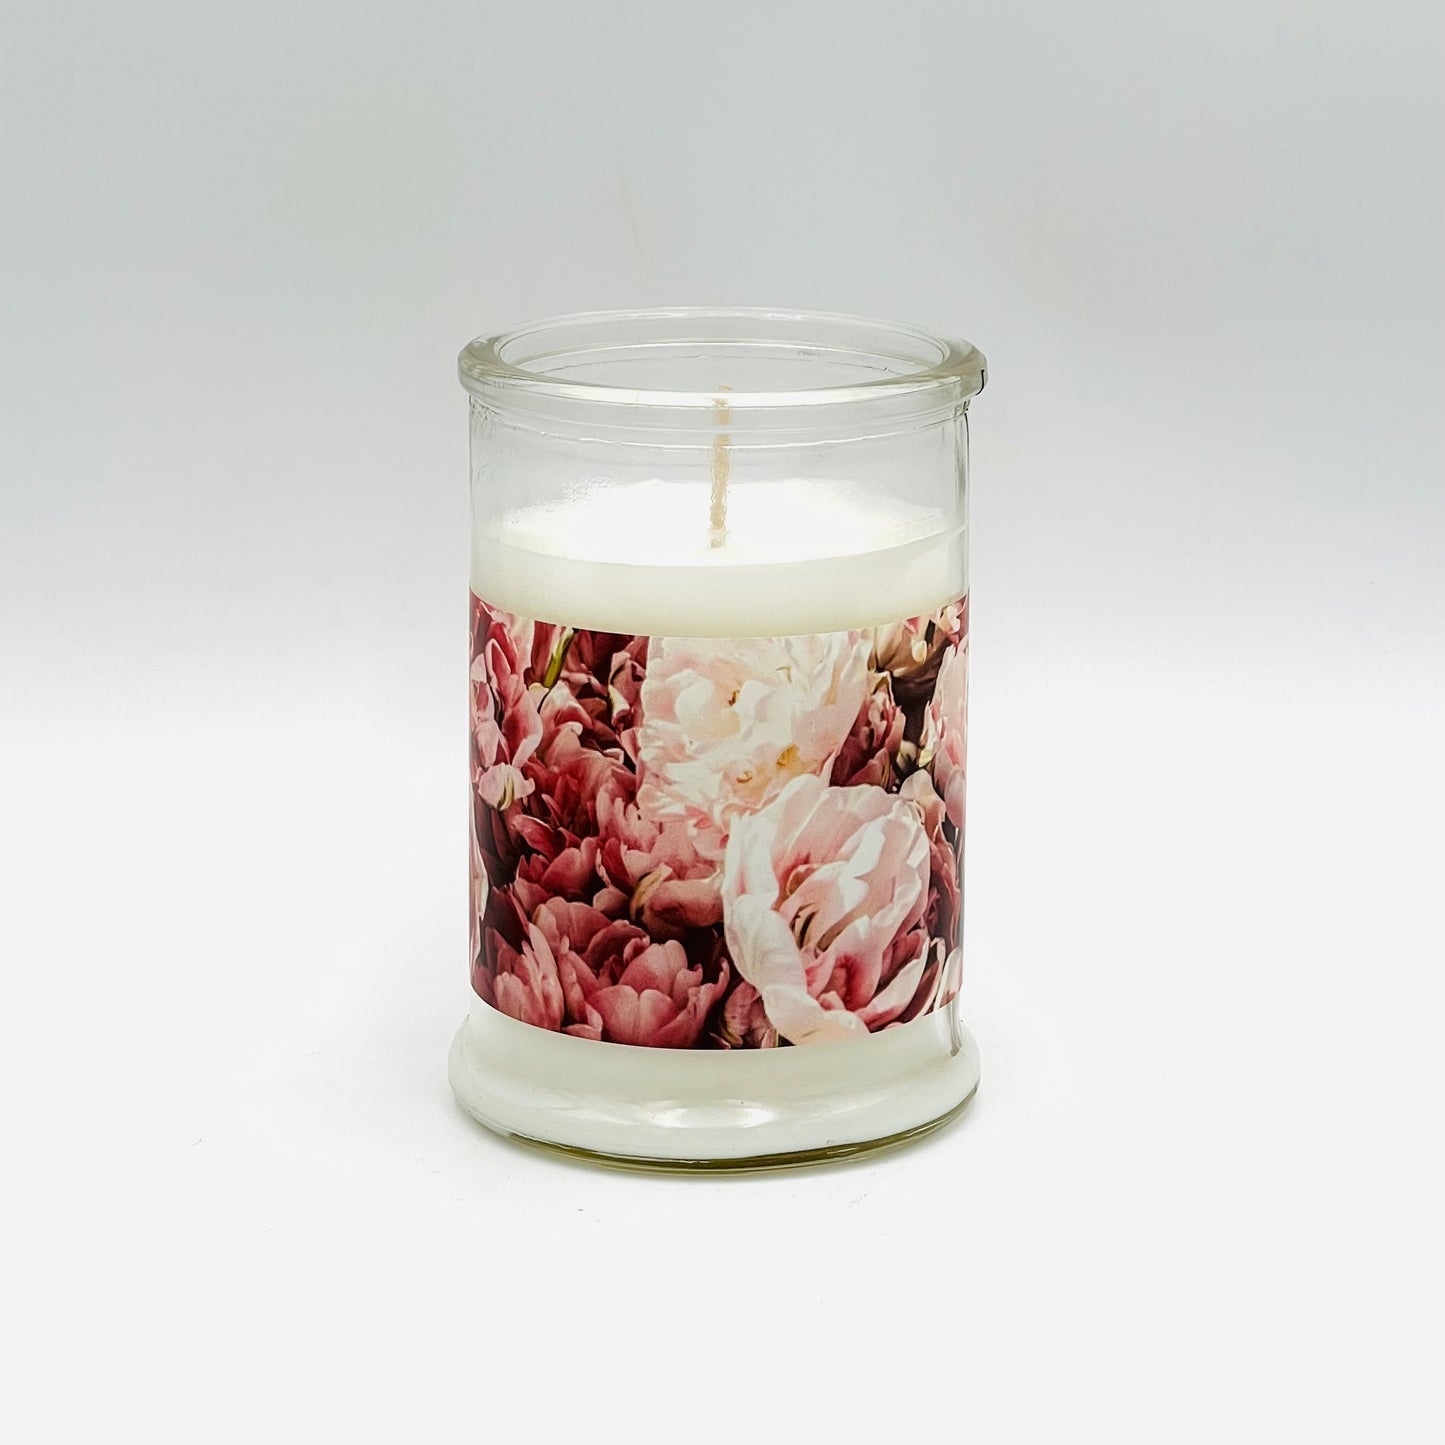 Aromātiskā svece “Peonijas” ar liegu peoniju aromātu